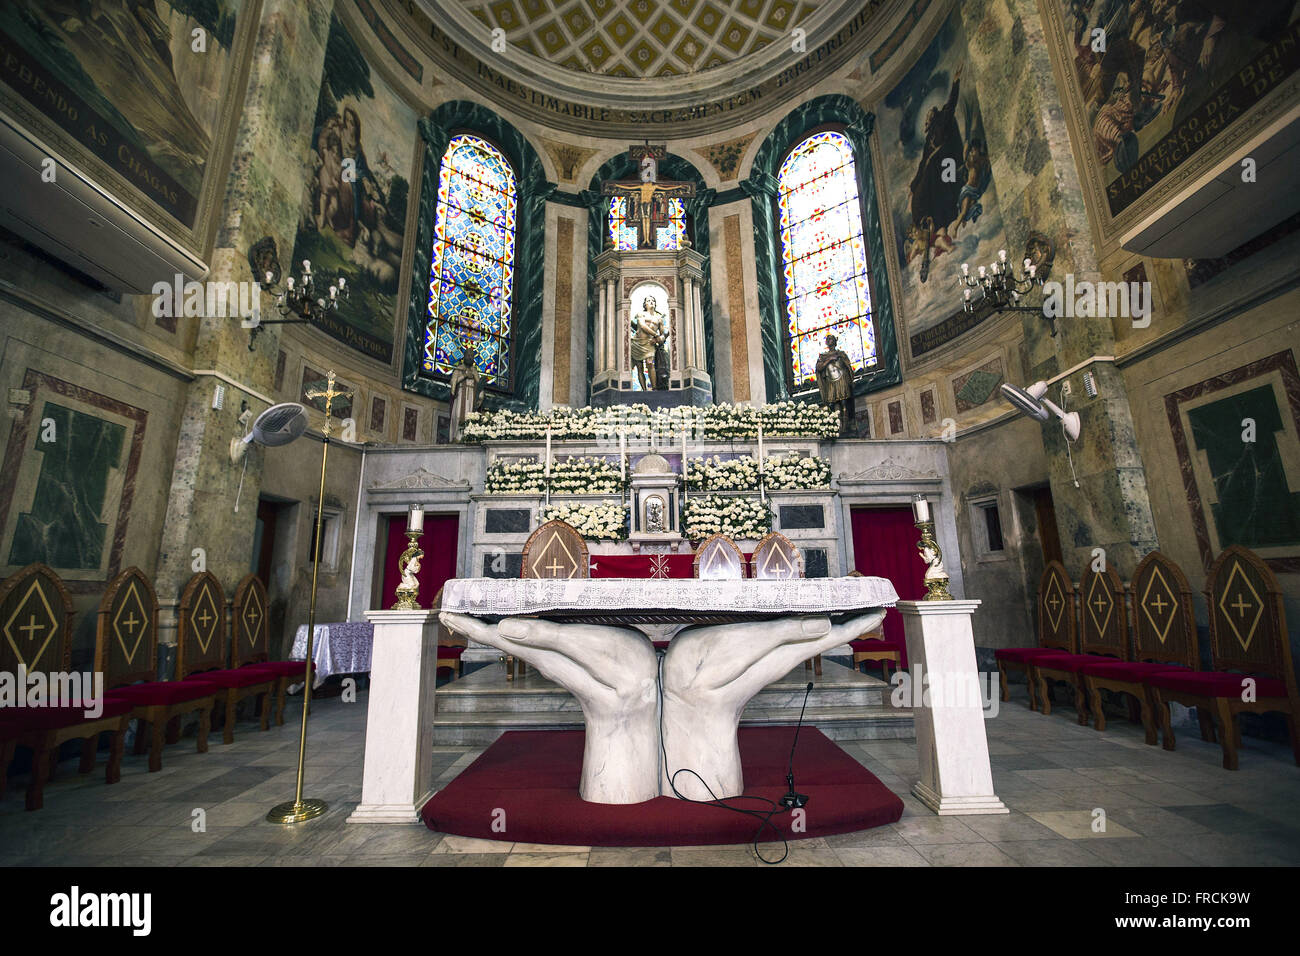 Vista interna do altar da Igreja de São Sebastião no centro da cidade Stock Photo